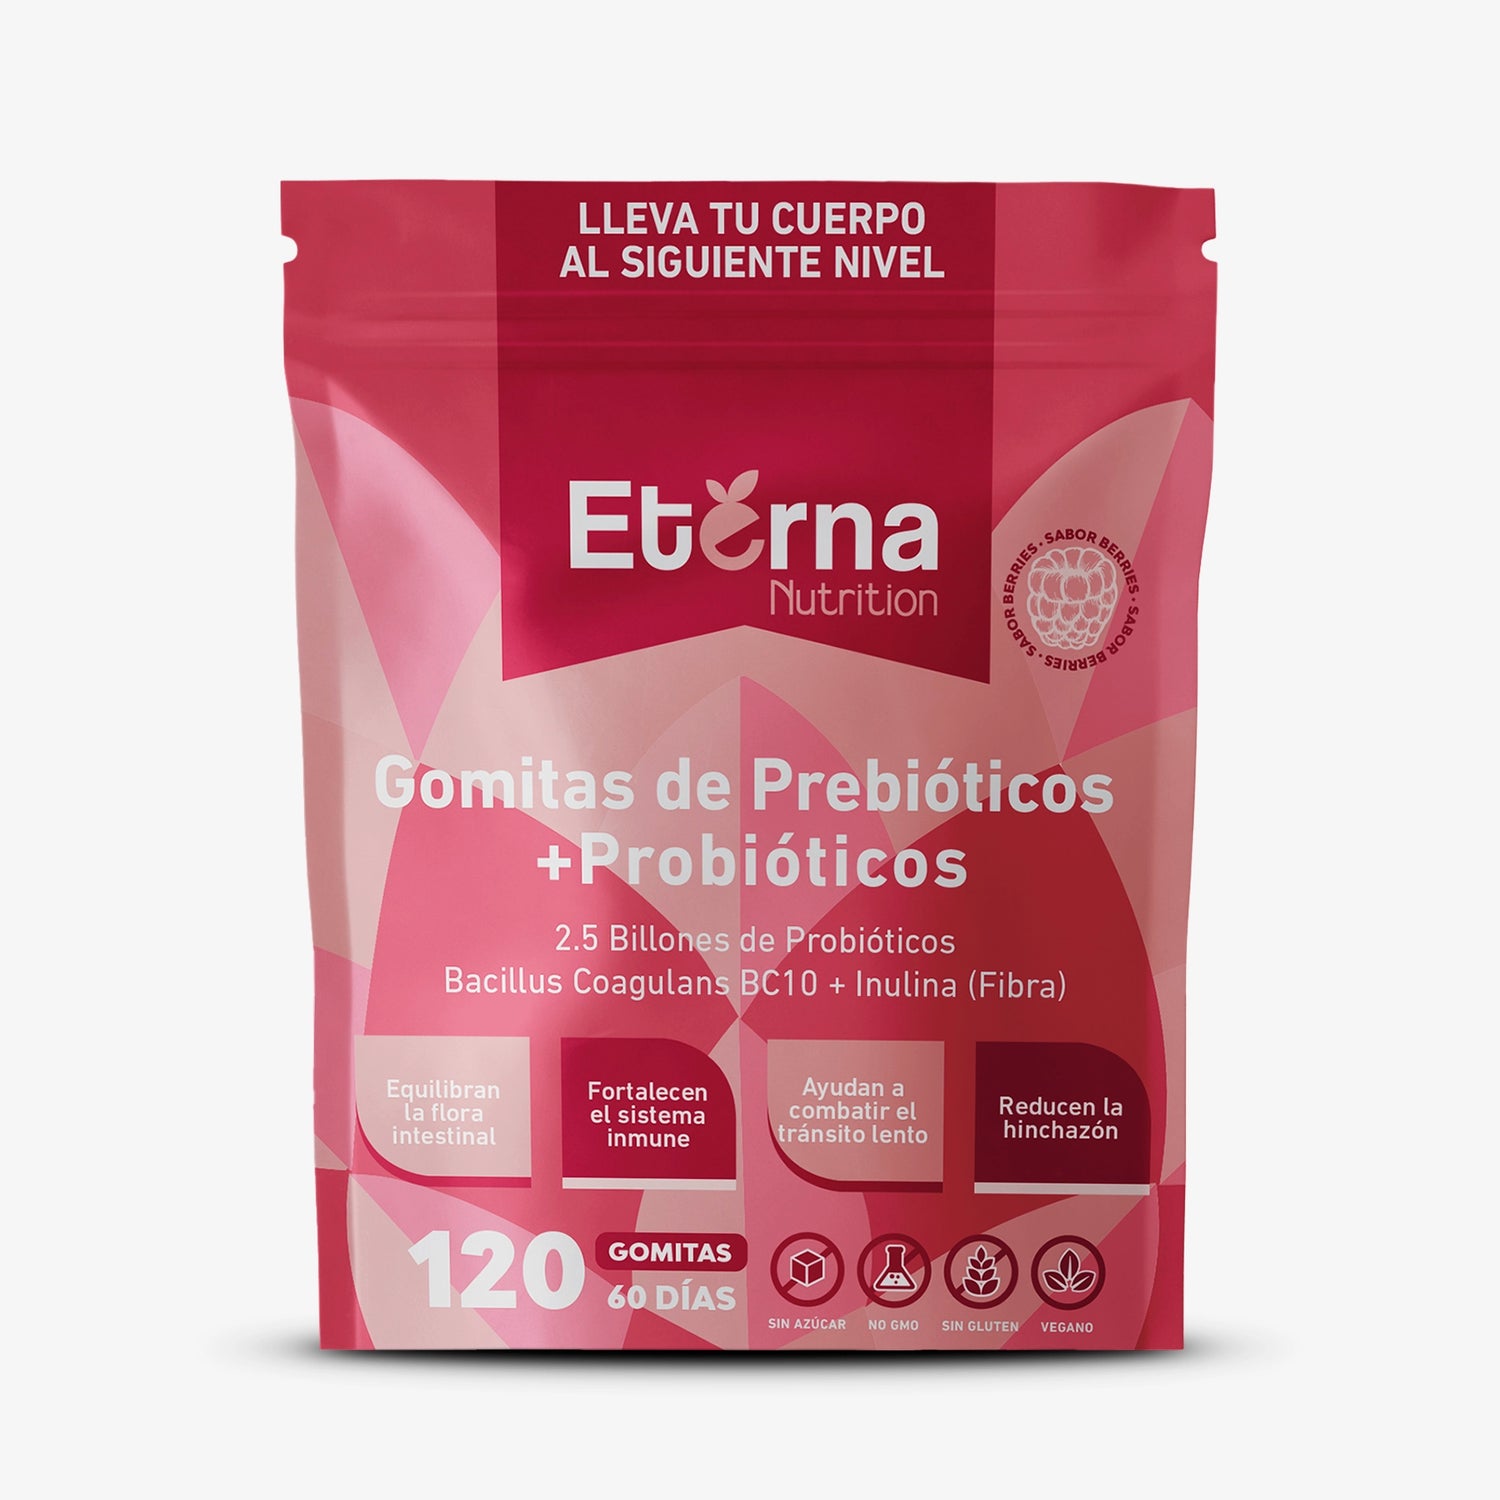 Bolsa de 120 Gomitas de Probióticos con Prebióticos Eterna Nutrition vista frontal